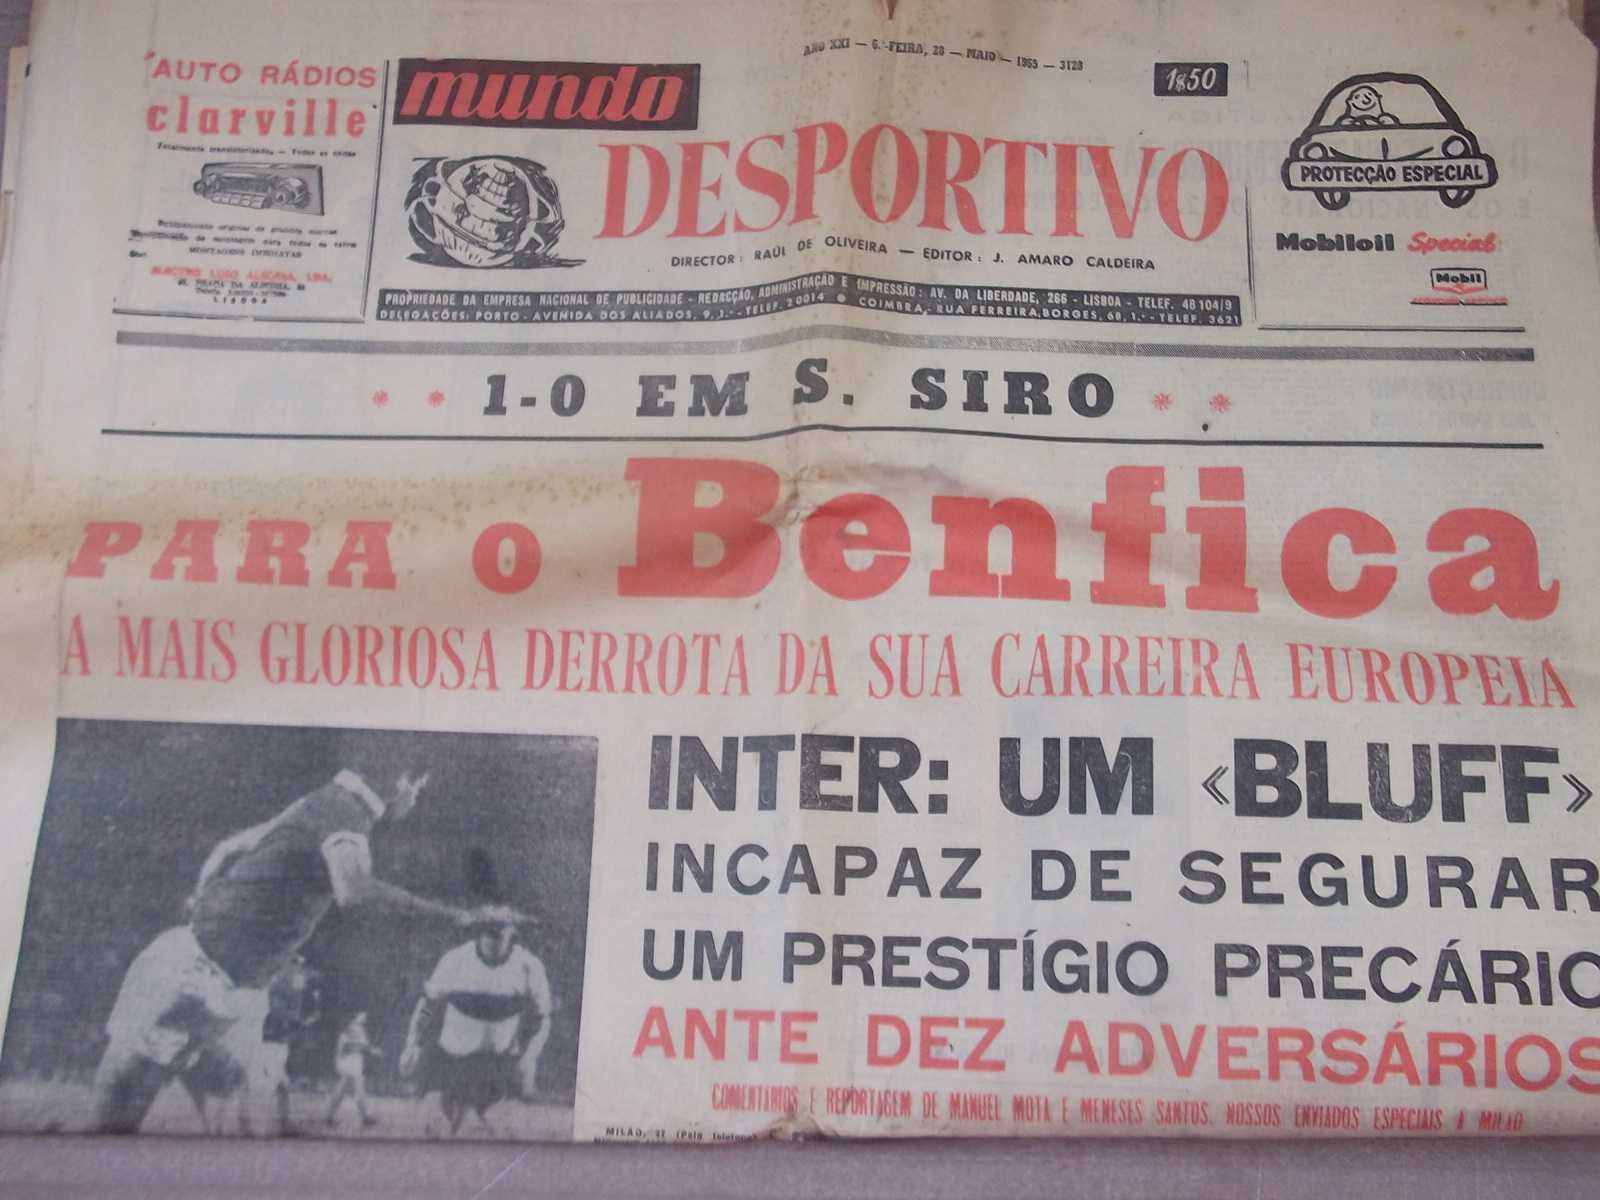 Final Taça Campeões Europeus 1965 BENFICA vs INTER - Mundo Desportivo